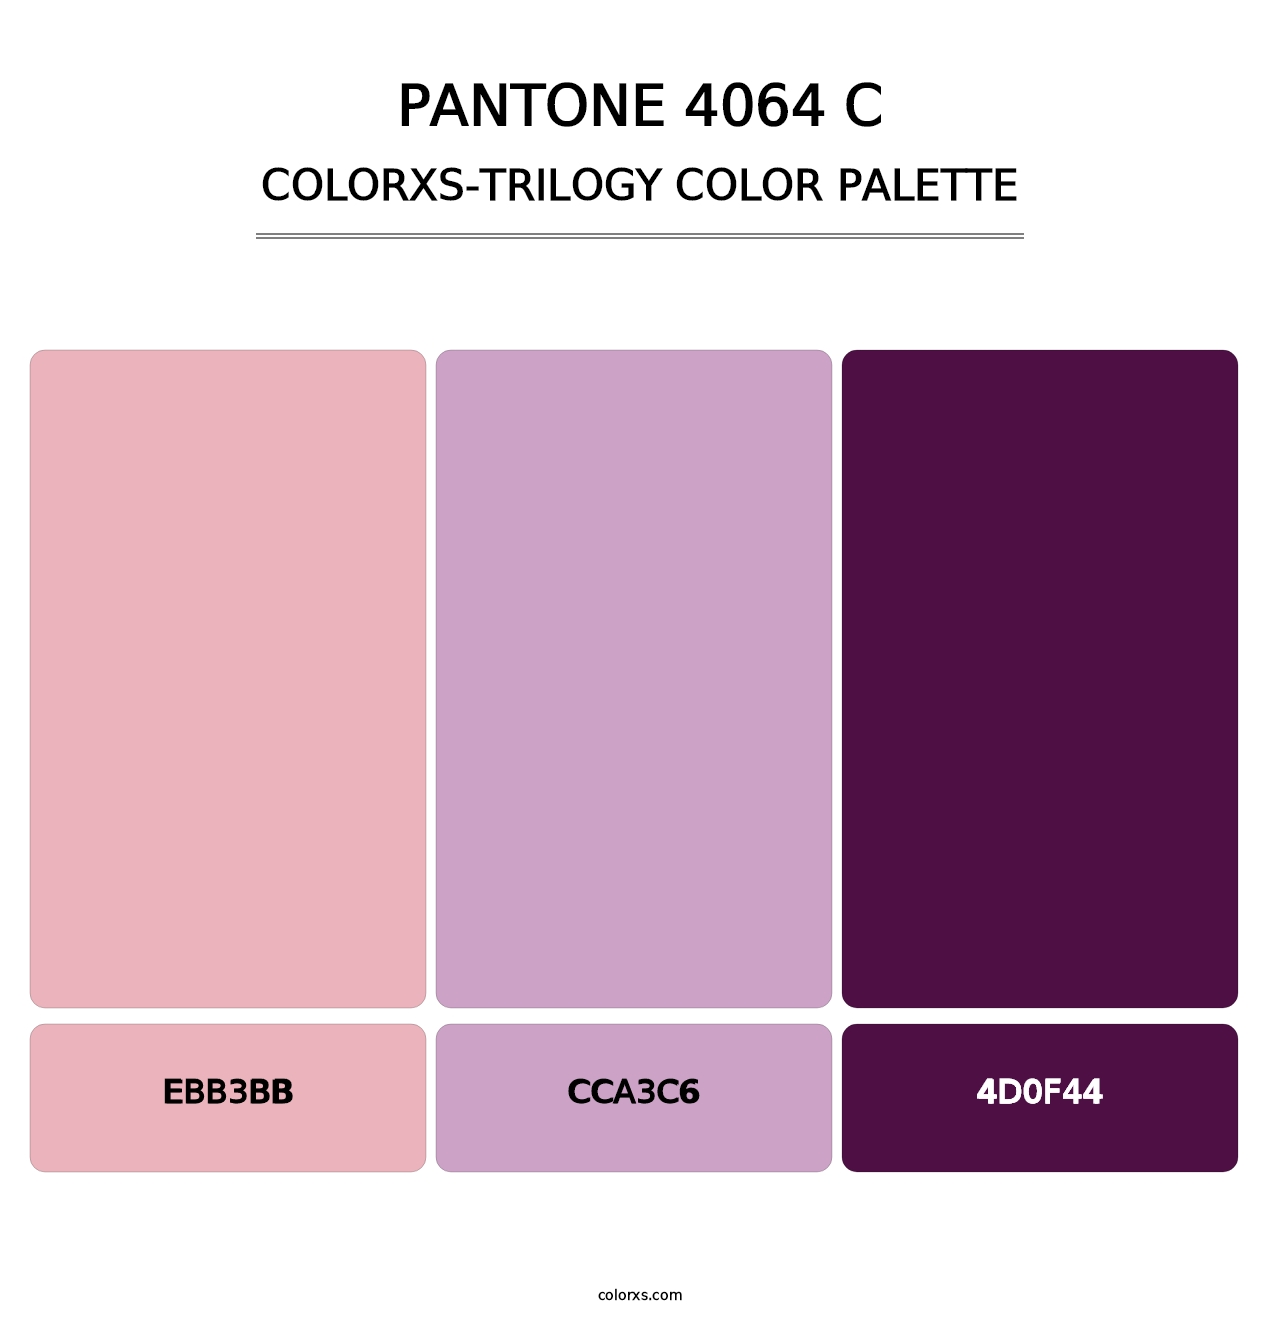 PANTONE 4064 C - Colorxs Trilogy Palette